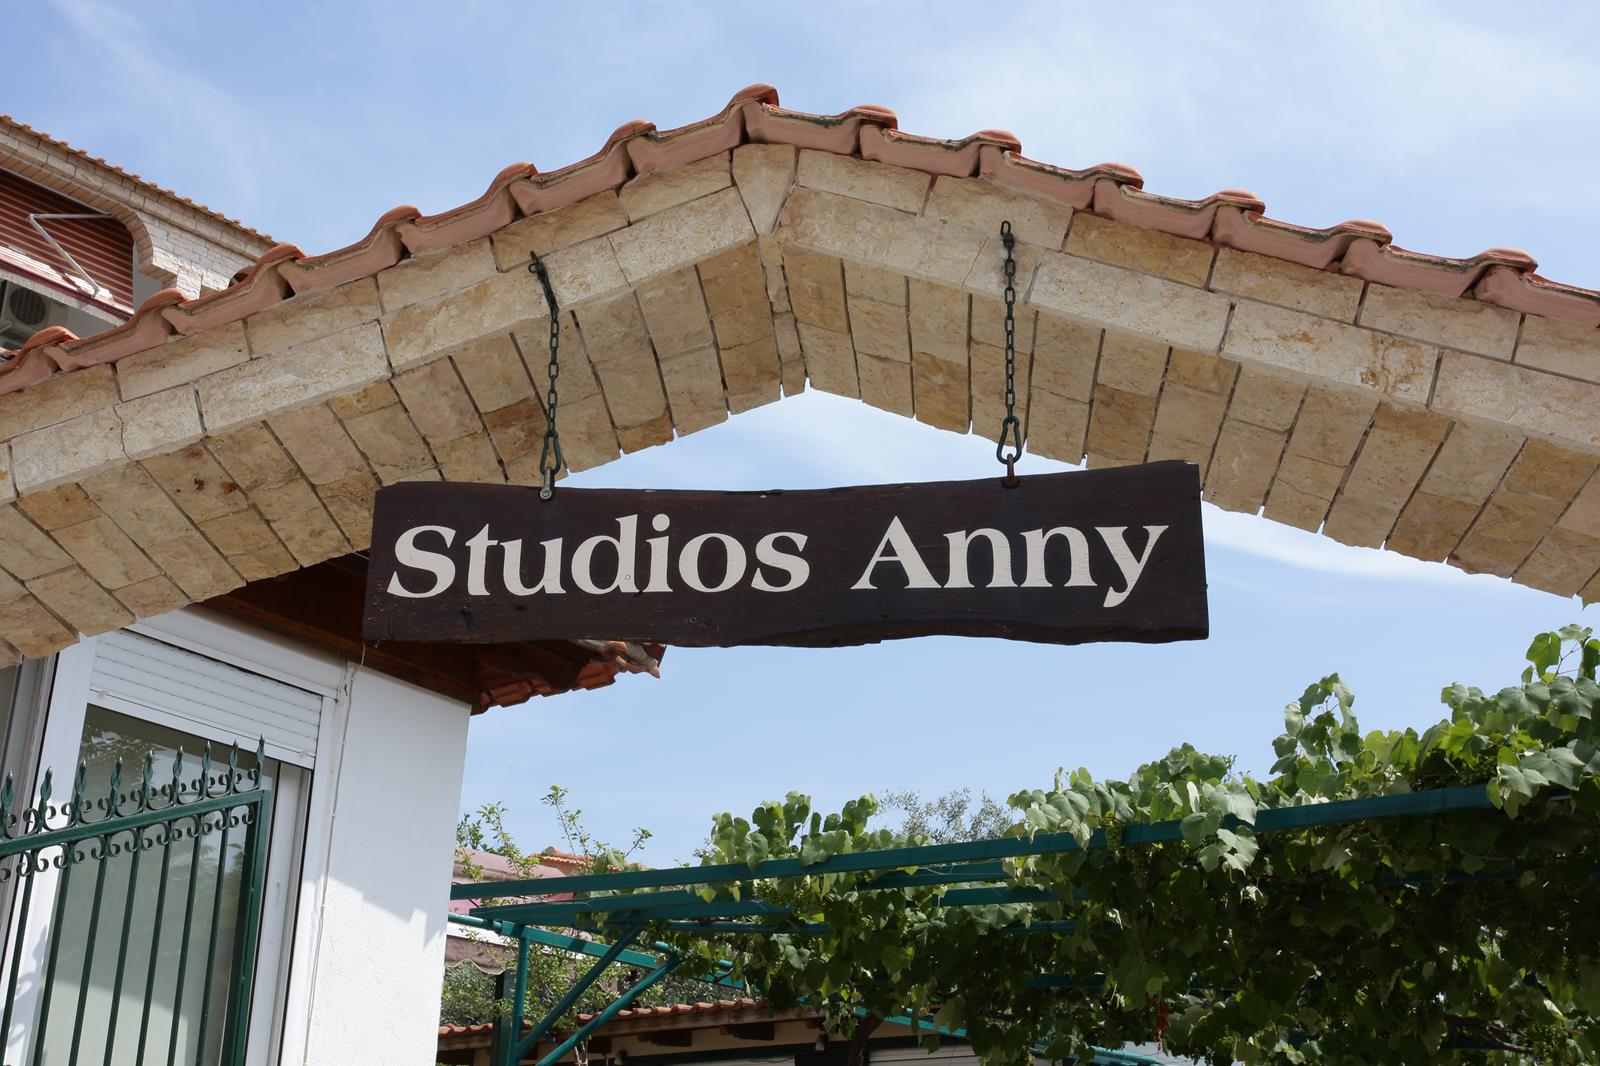 θασος ξενοδοχειο - Studios Anny Houses